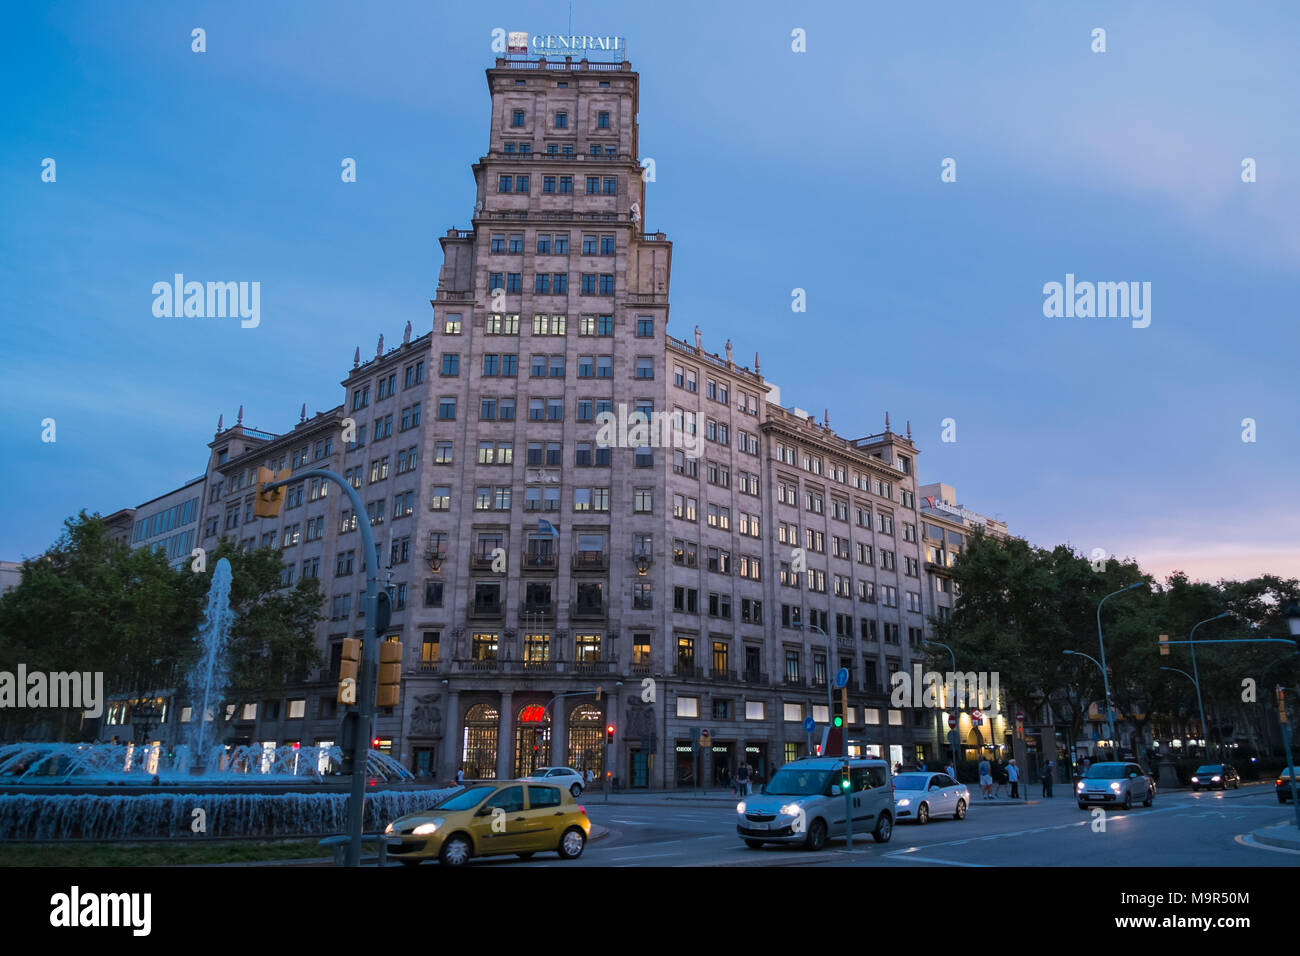 Generali Insurance Building, Barcelona, Spain Stock Photo